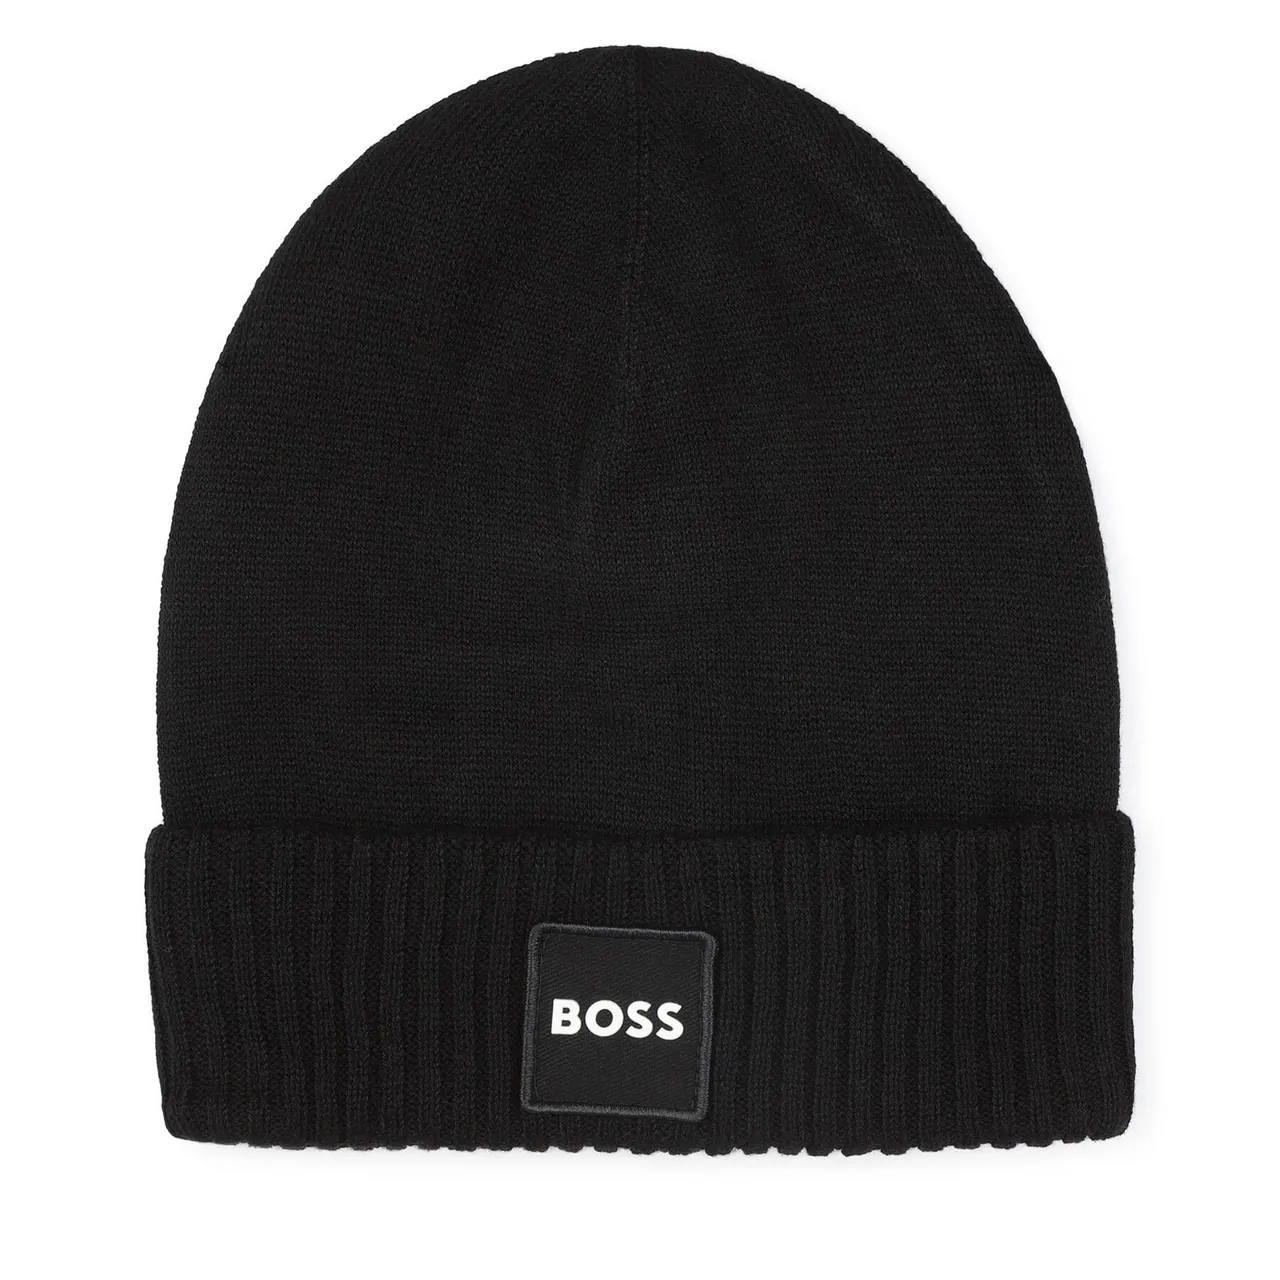 Mütze Boss J21283 D Black 09B